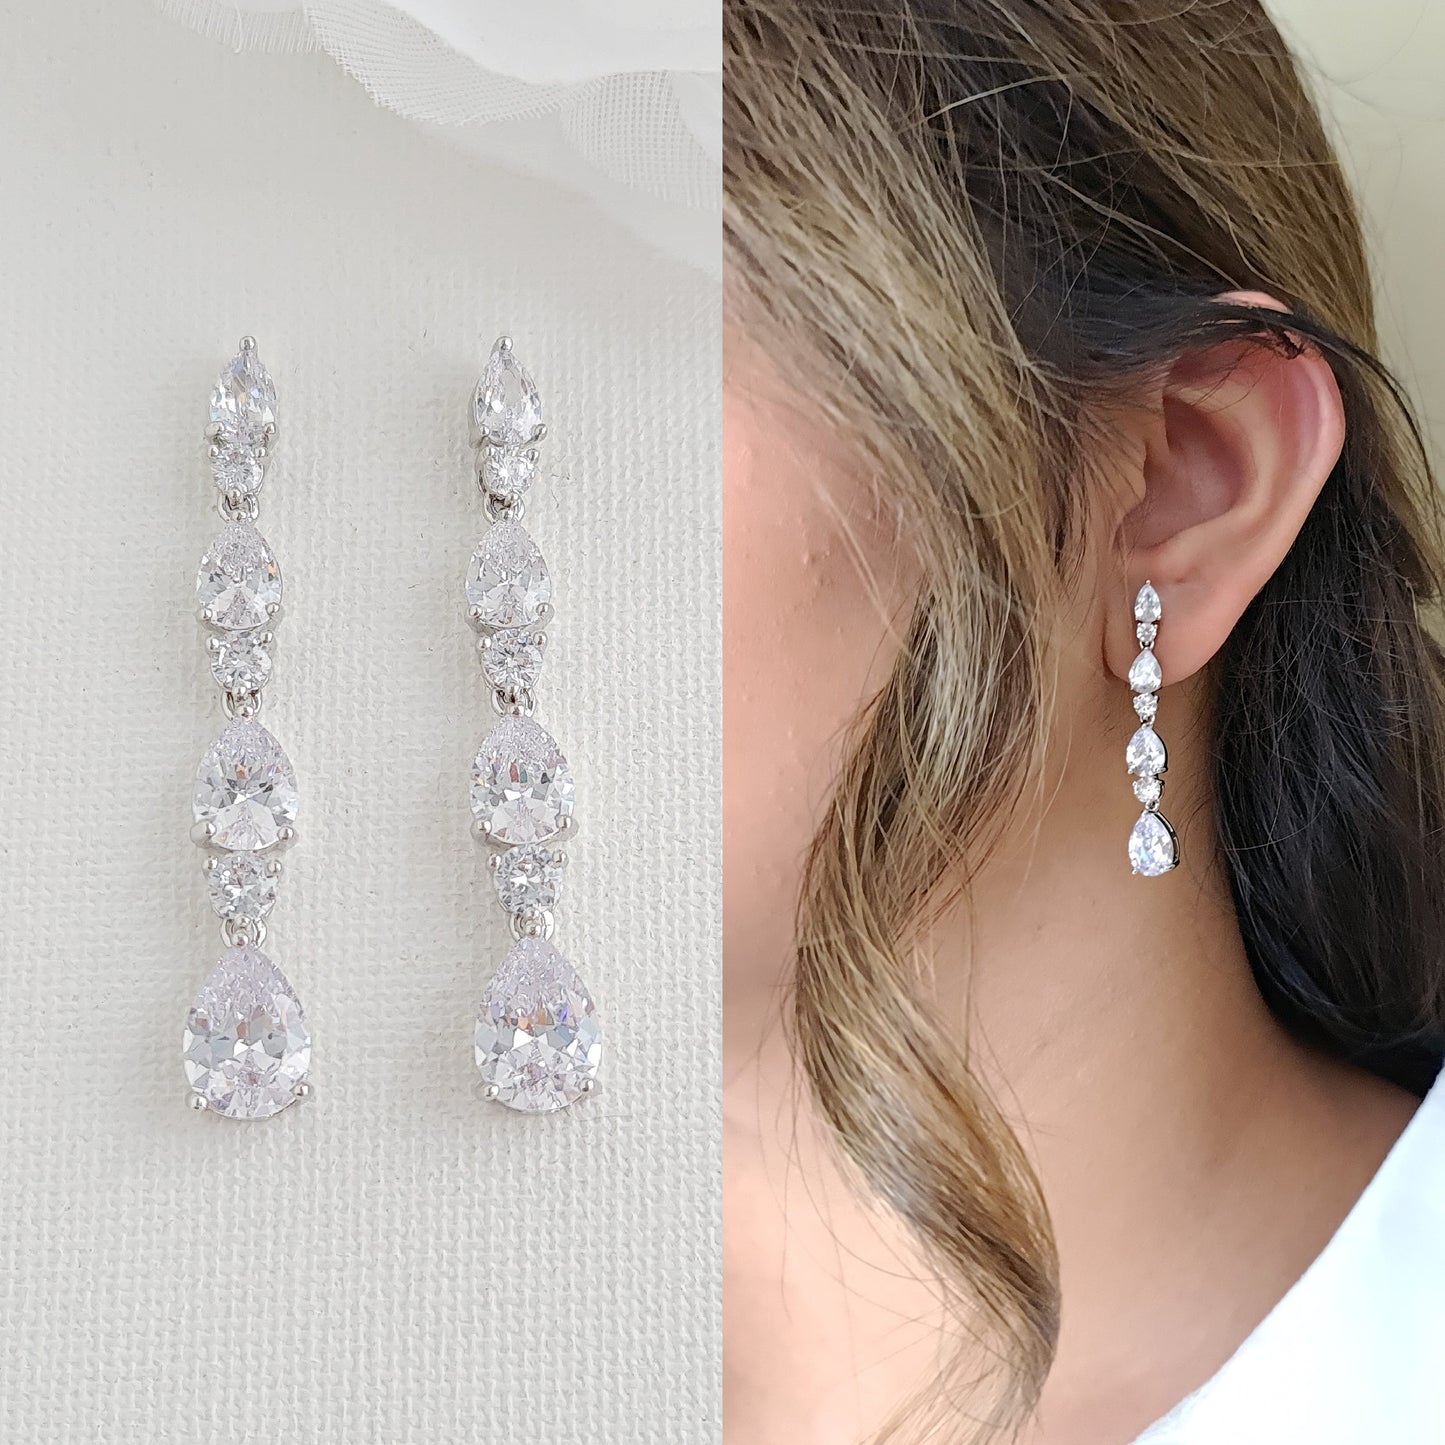 Teardrop Bracelet and Earrings Set for Weddings-Hazel